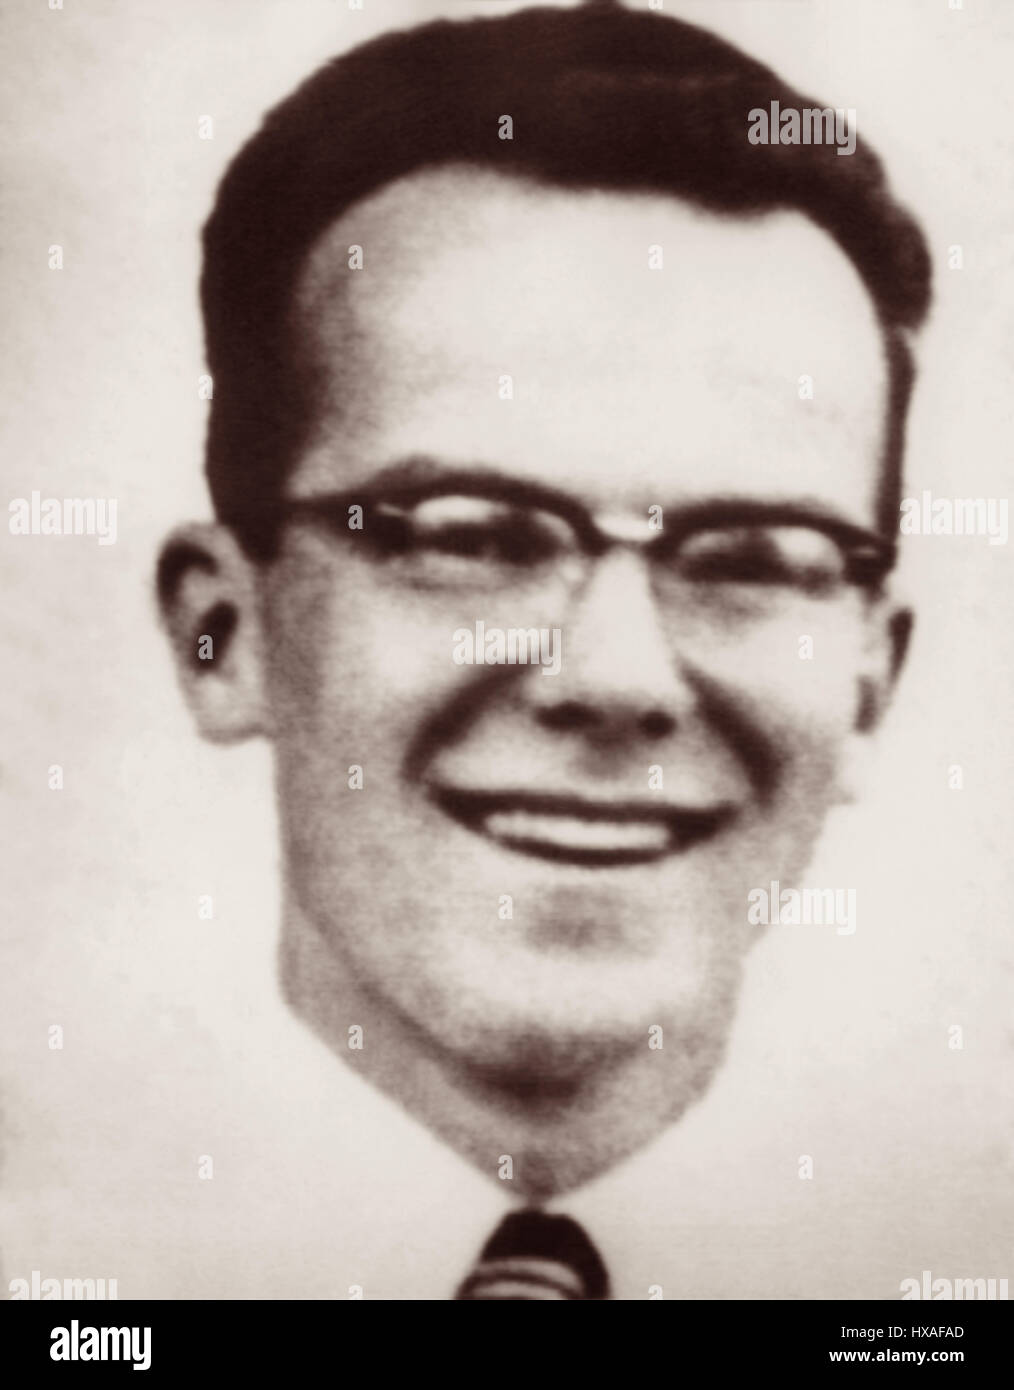 Pete Fleming (1928-1956) war ein evangelischer Christ, einer der fünf Missionare 8. Januar 1956 getötet während der Teilnahme an "Betrieb Auca", ein Versuch, das Evangelium von Jesus Christus um die Huaorani-Ureinwohner in den Dschungel von Ecuador zu bringen. Stockfoto